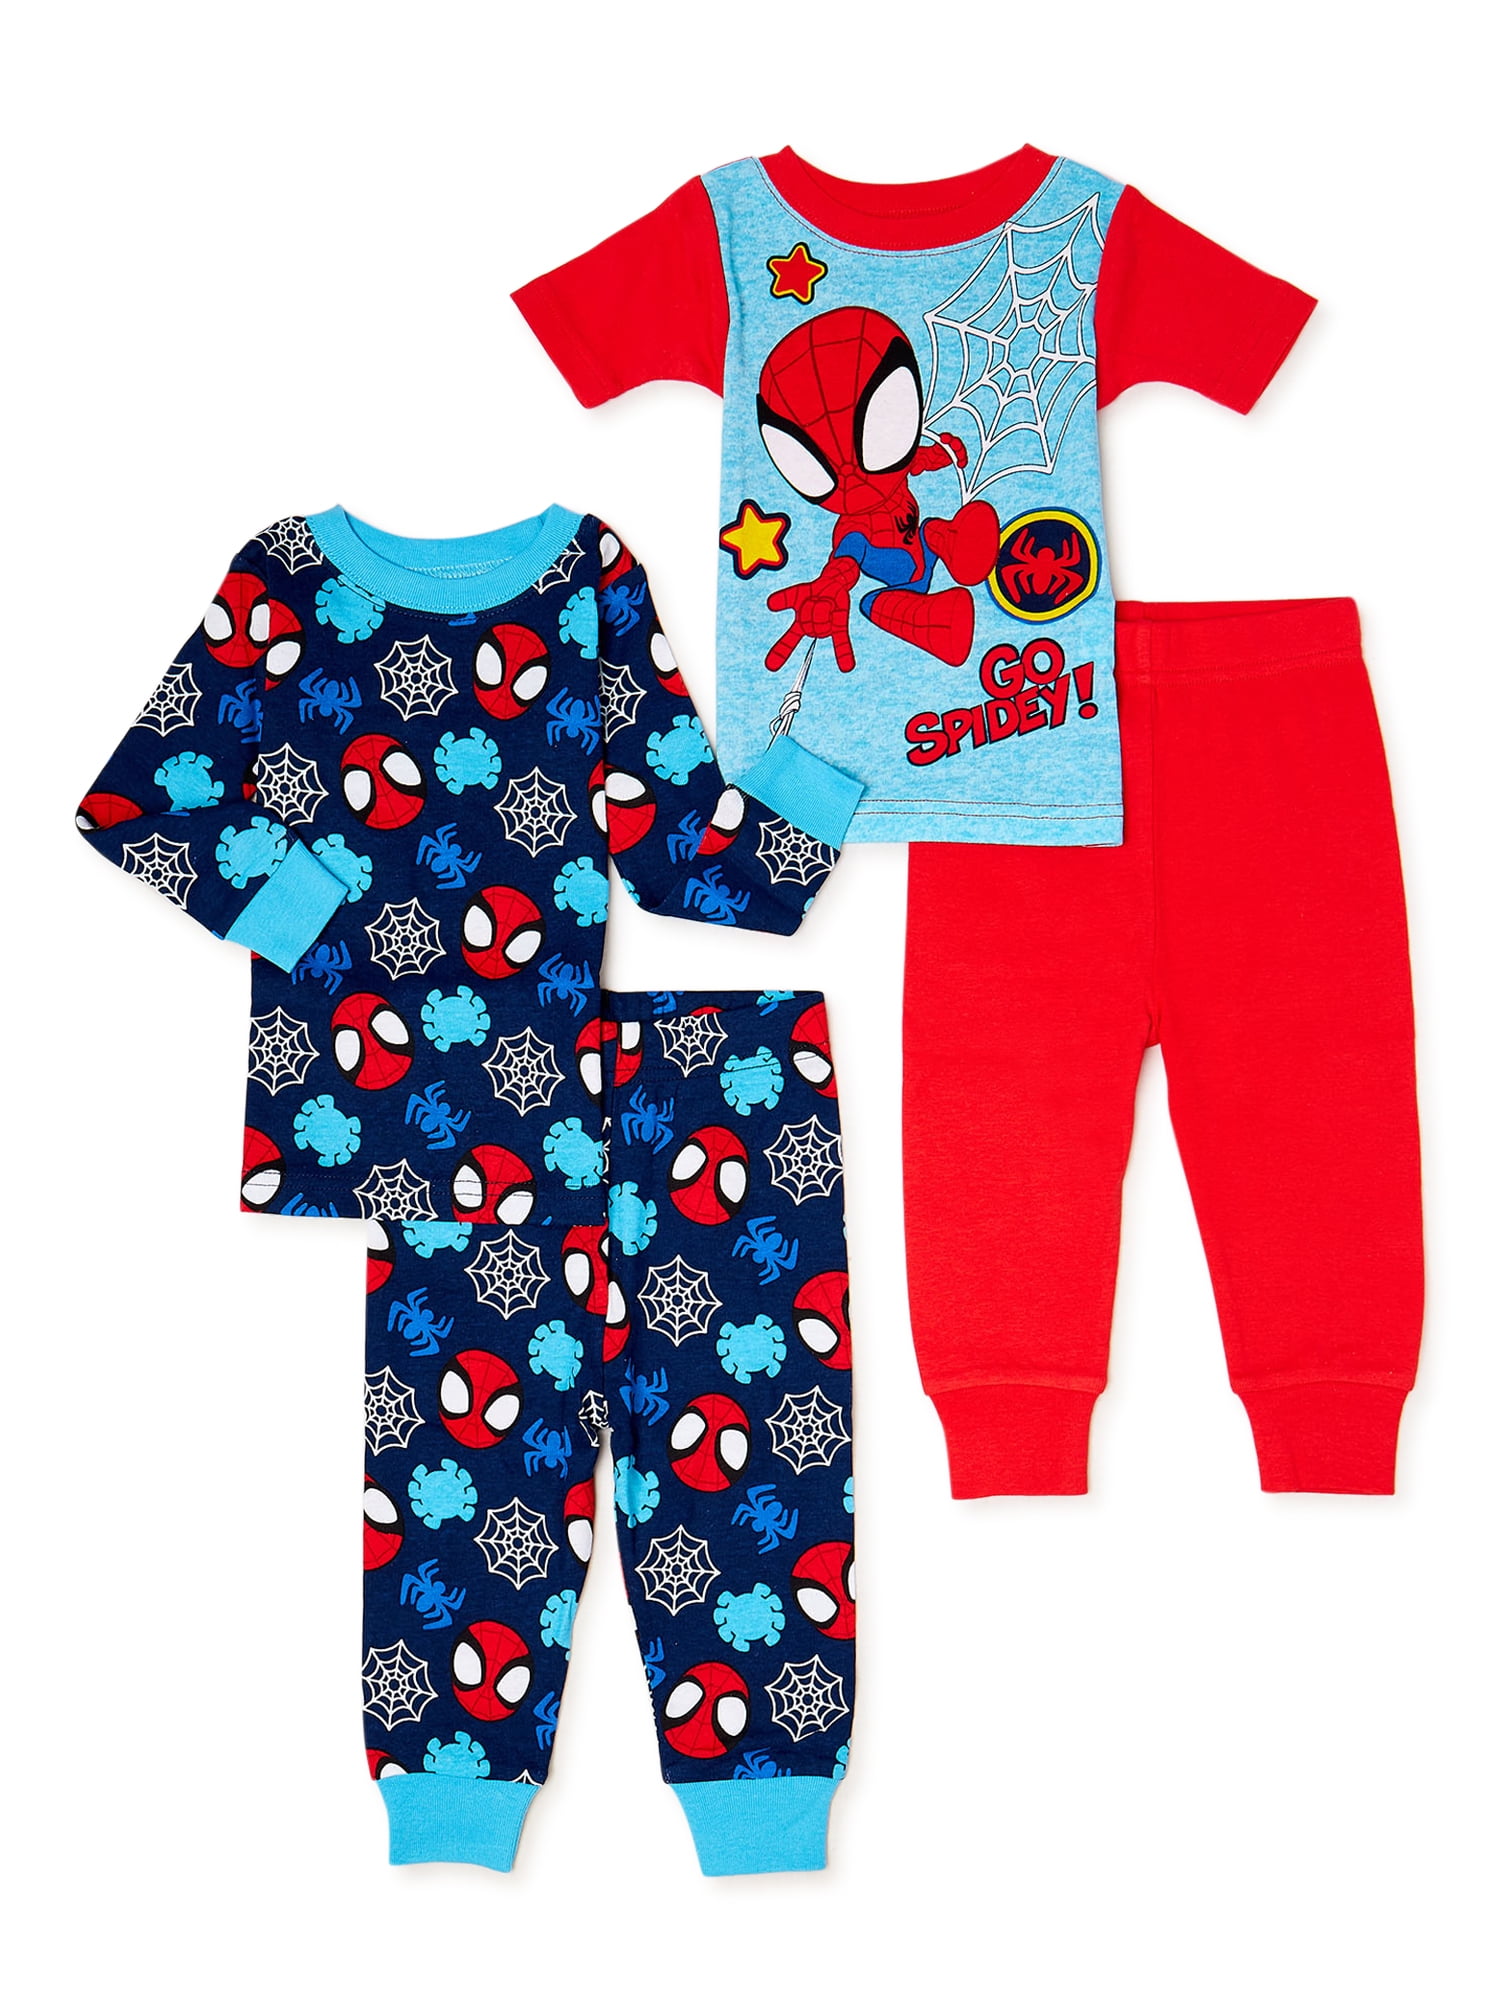 Baby Kid Toddler Boy Superhero Top+Pants Pajamas Sleepwear Nightwear Clothes Set 